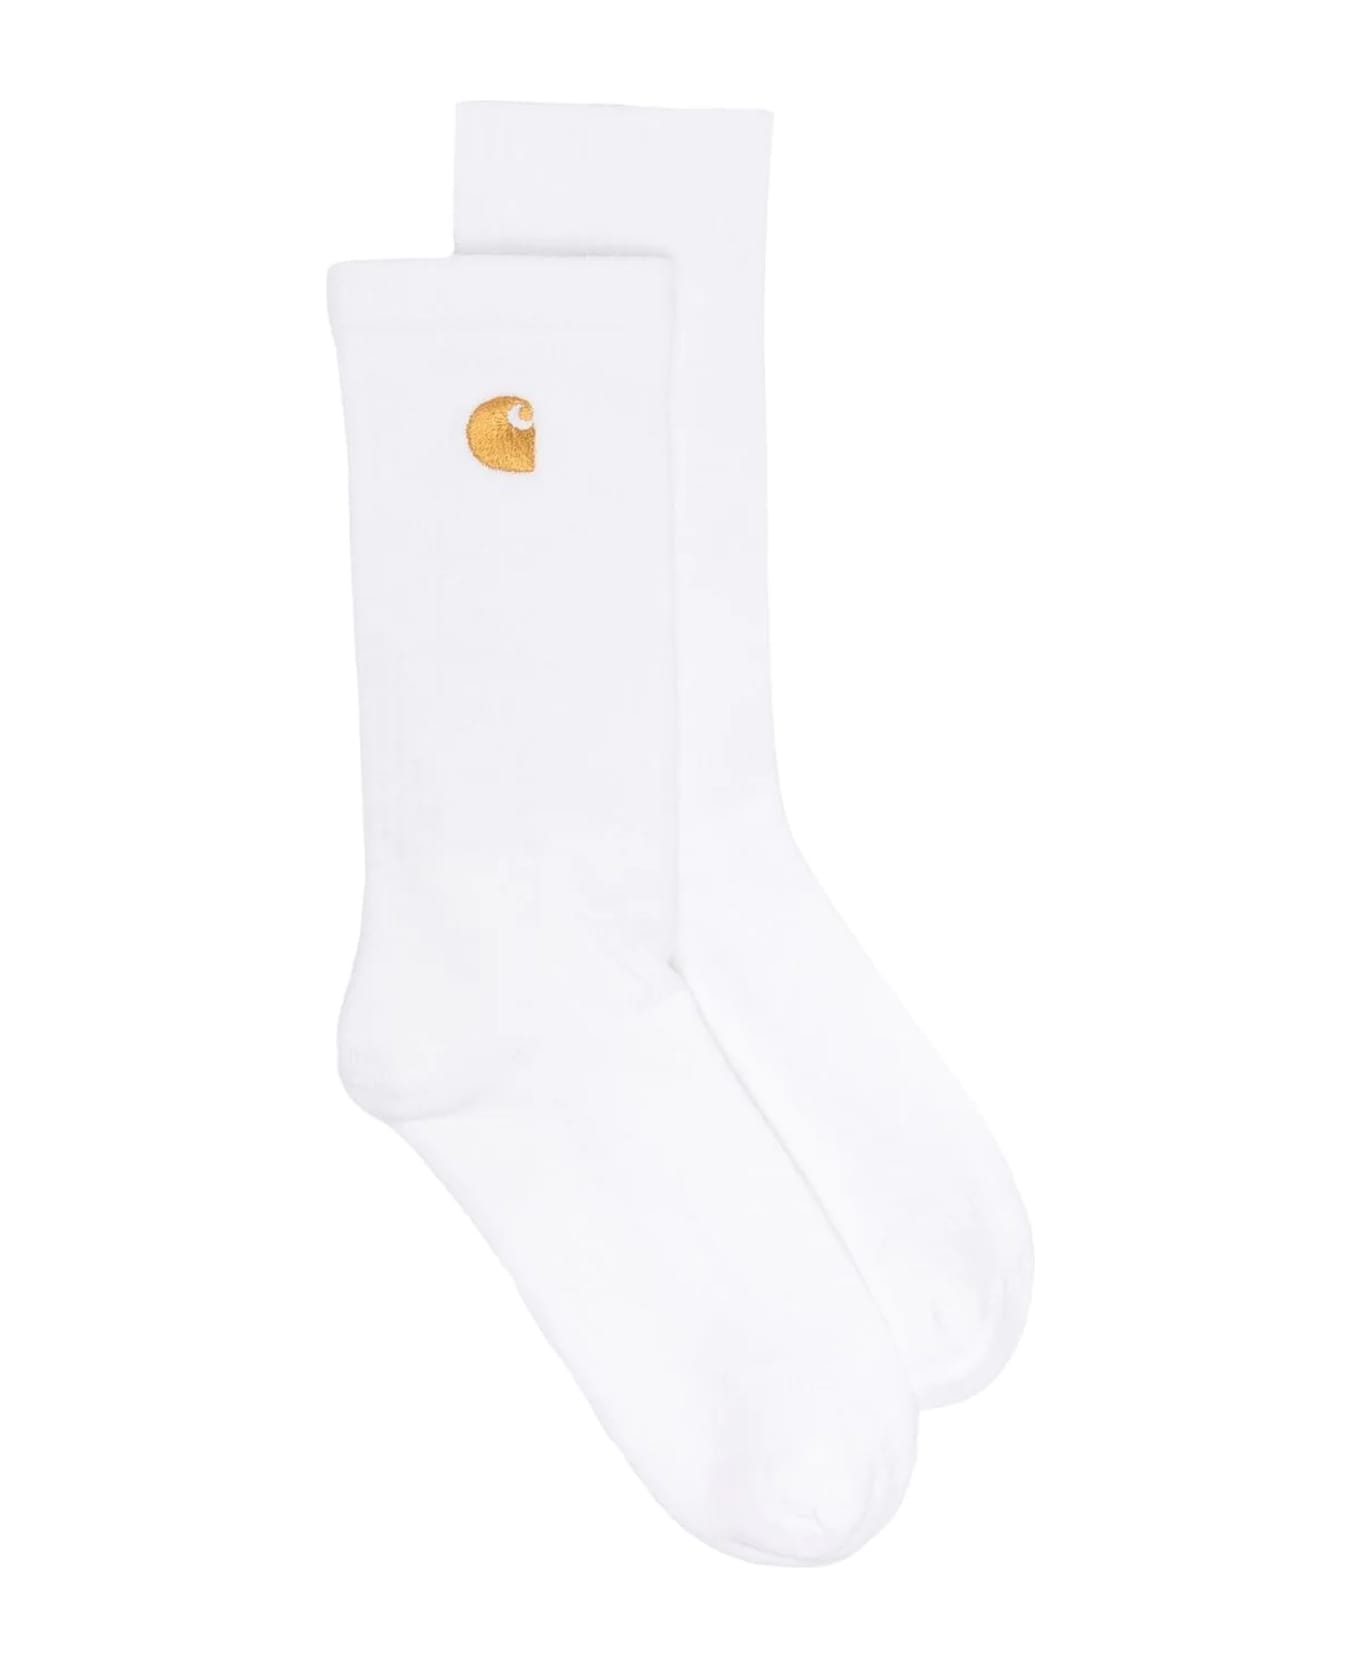 Carhartt White Cotton Blend Socks - White 靴下